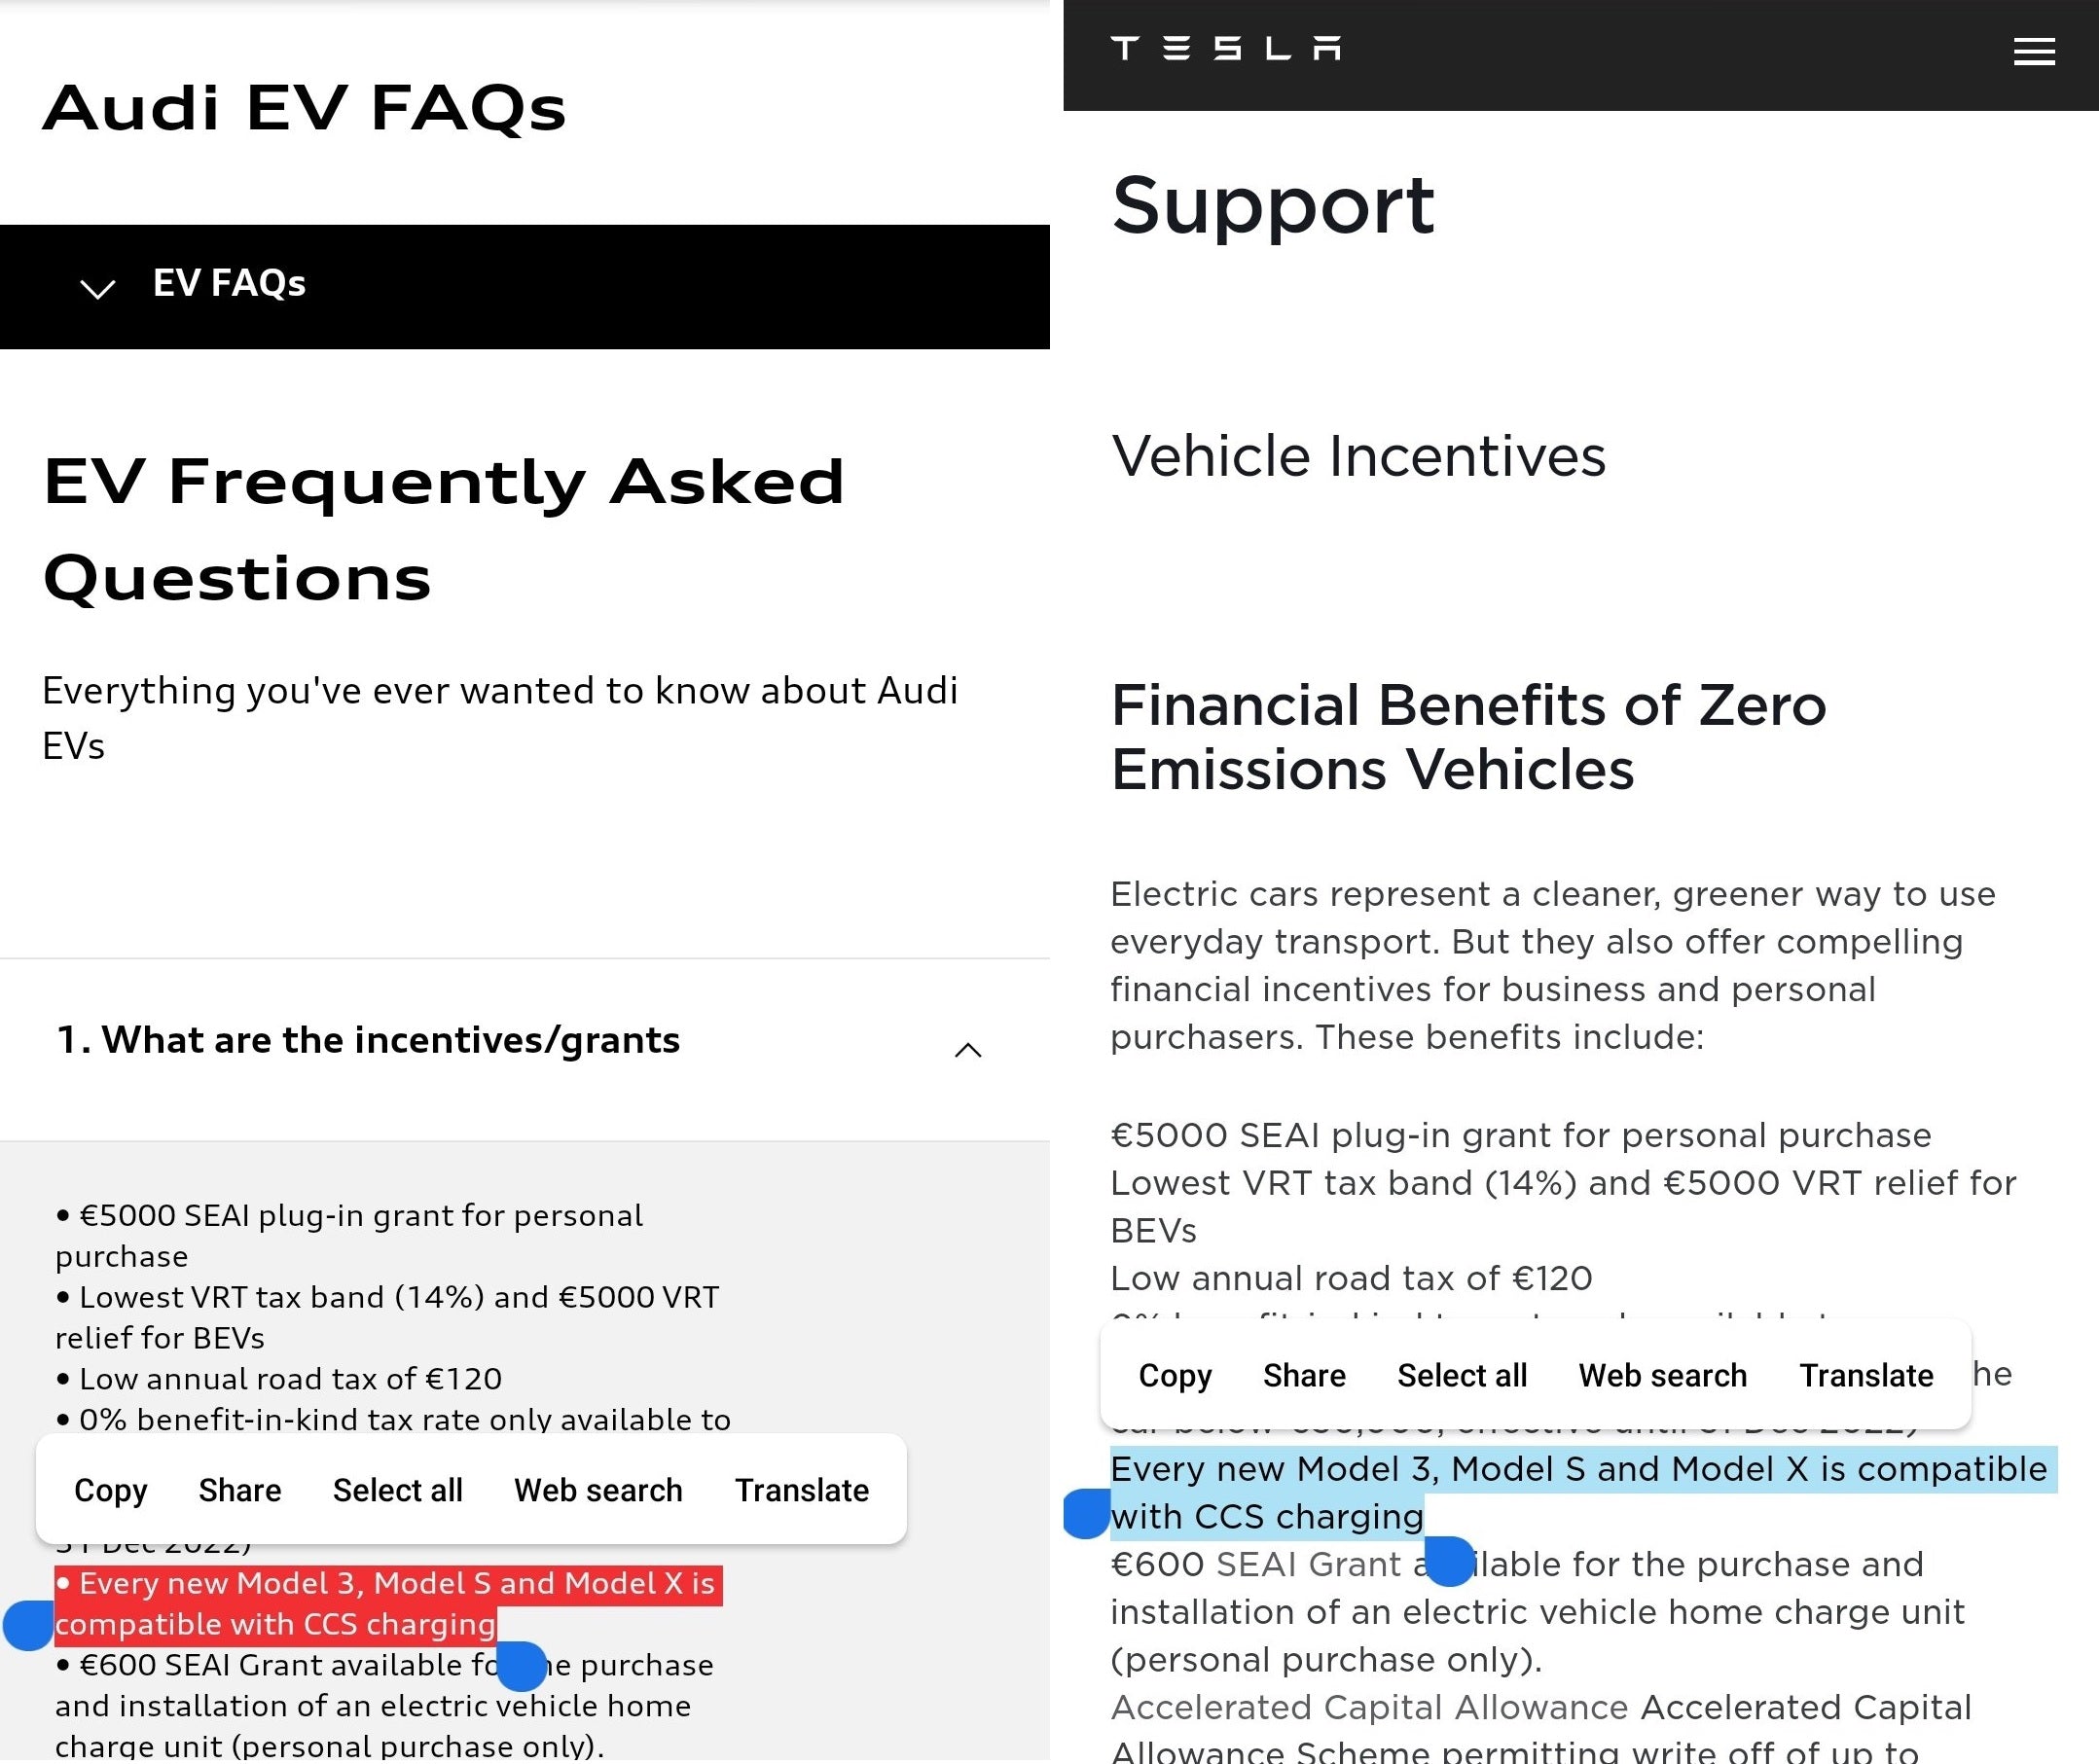 Audi Simply “Copy & Paste” Tesla Website Description